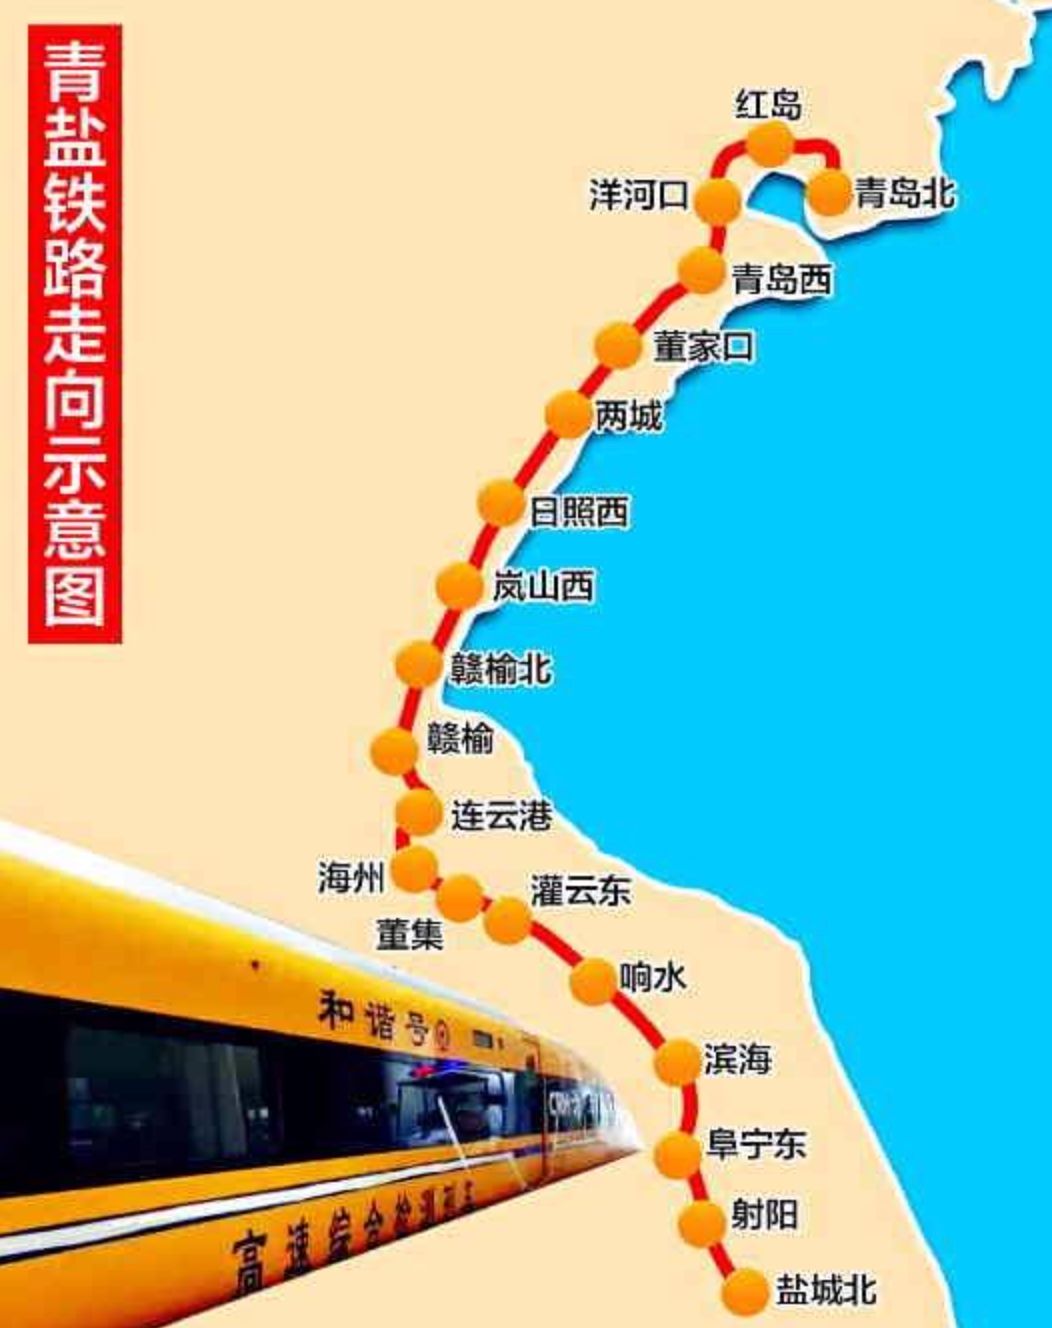 青岛到临沂年底要通高铁7月调图后青岛西站直达烟台威海